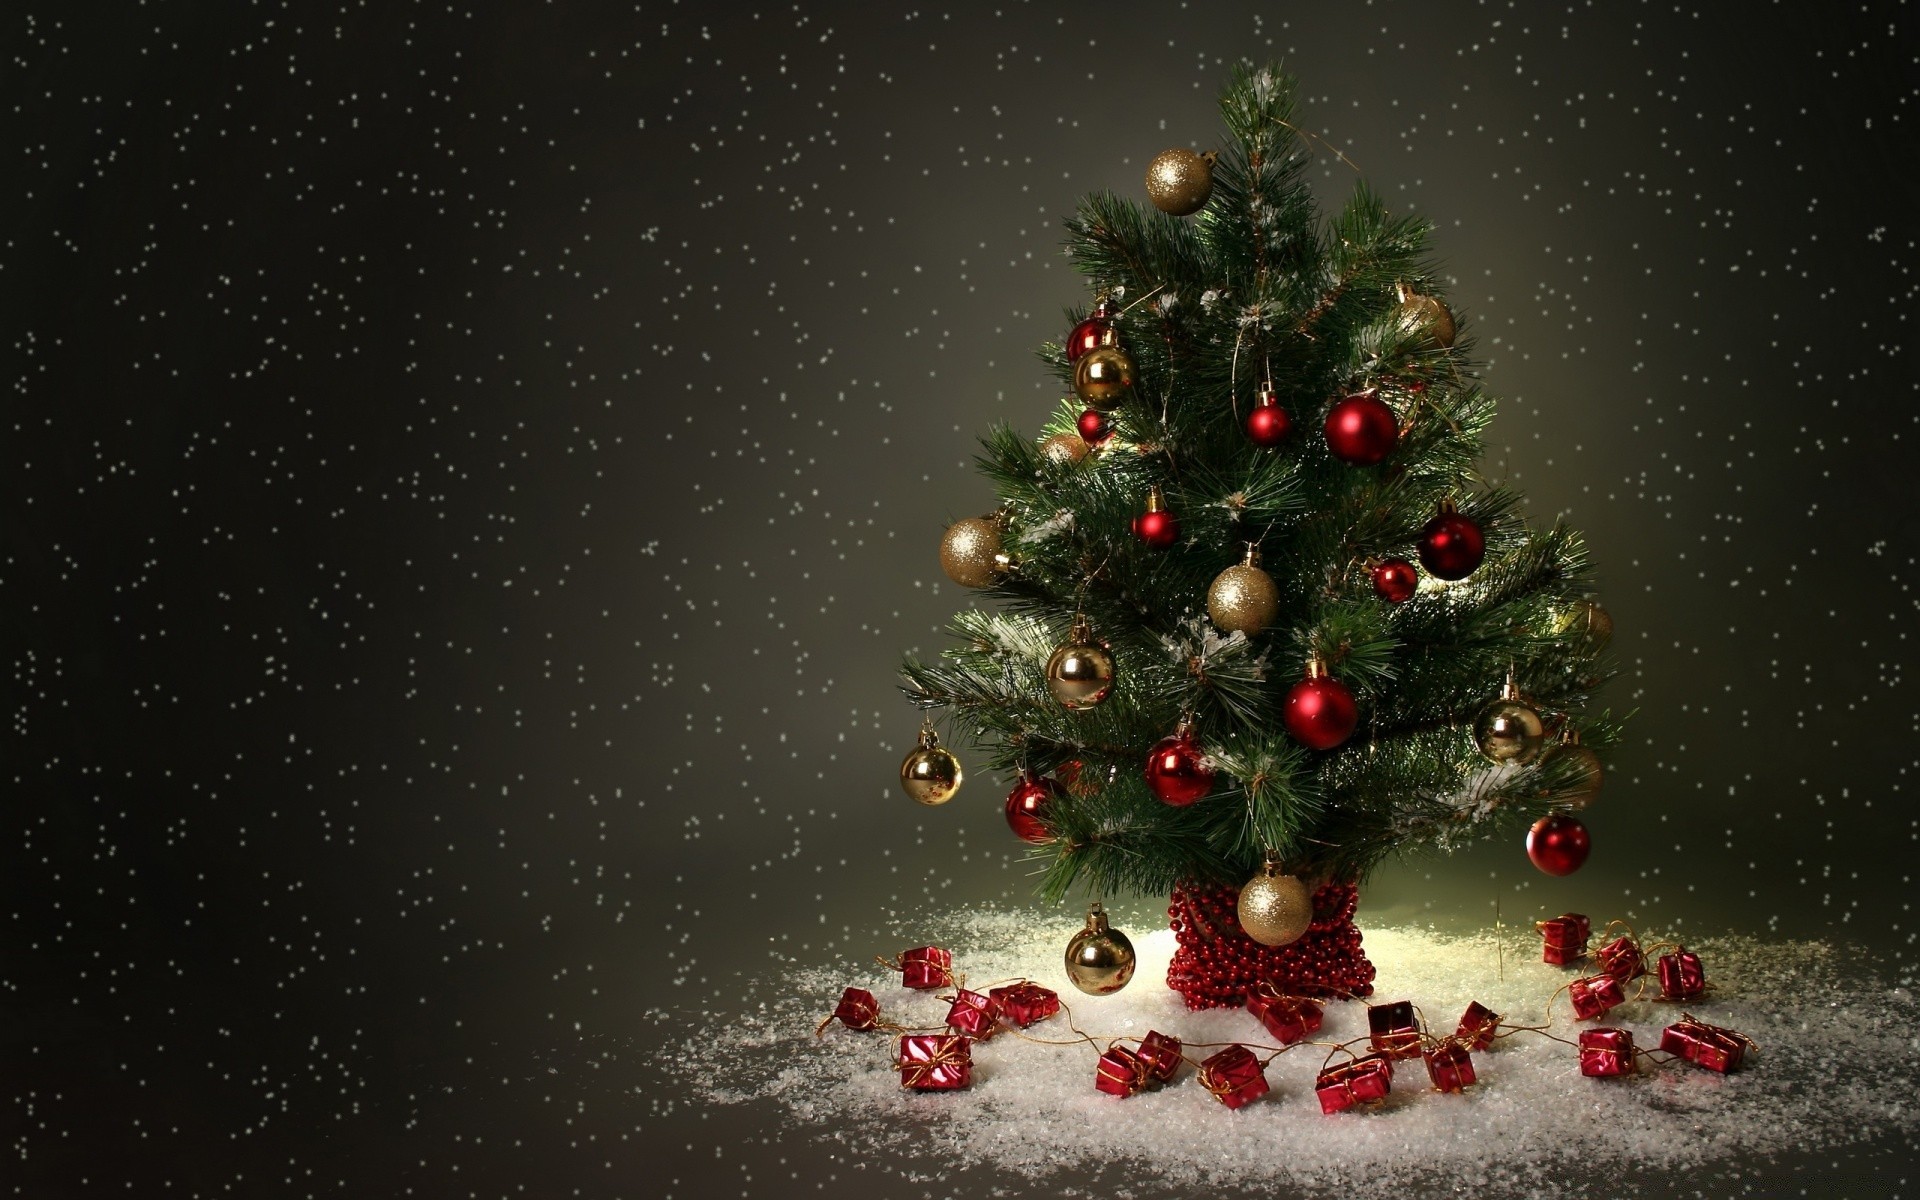 рождество зима праздник рождественская елка мерри снежинка украшения снег дерево рабочего стола ева светит новый год мяч сезон карта пихта сосна